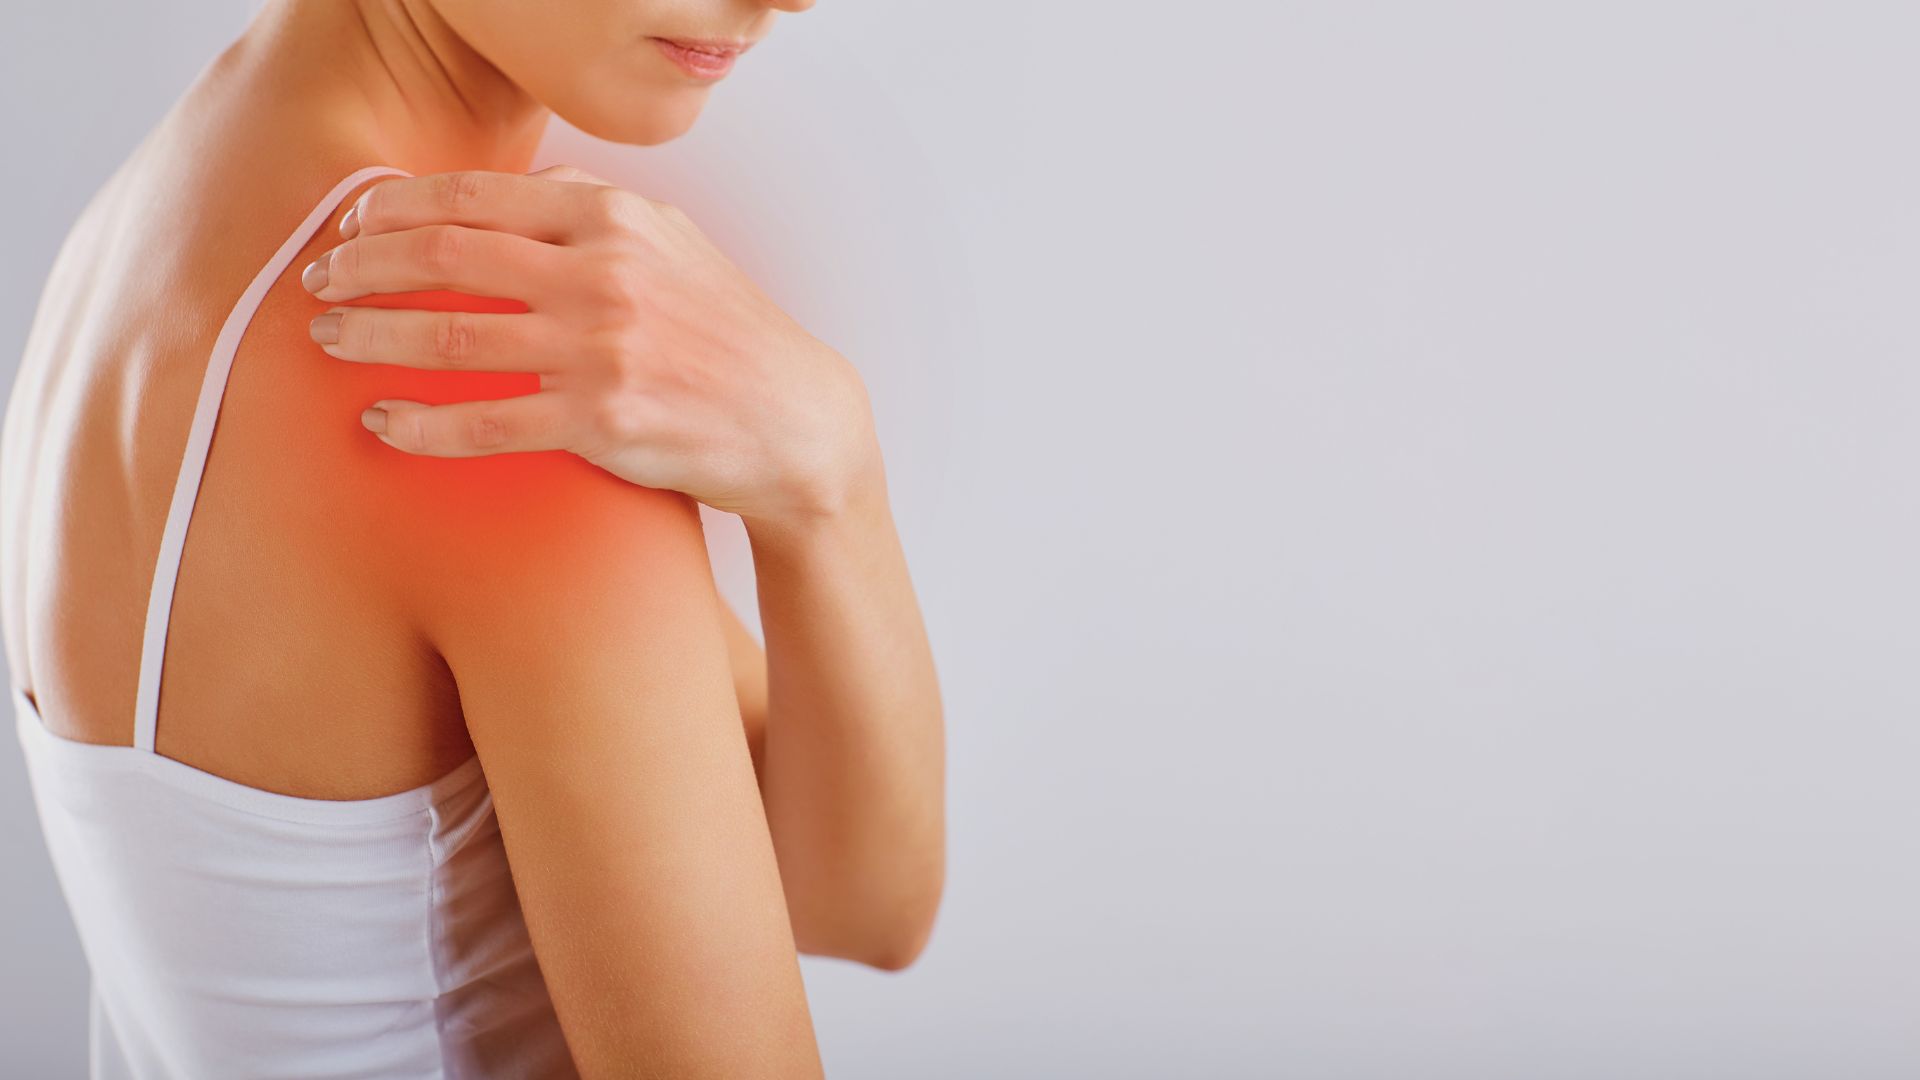 Chronic Shoulder Pain - Bursitis